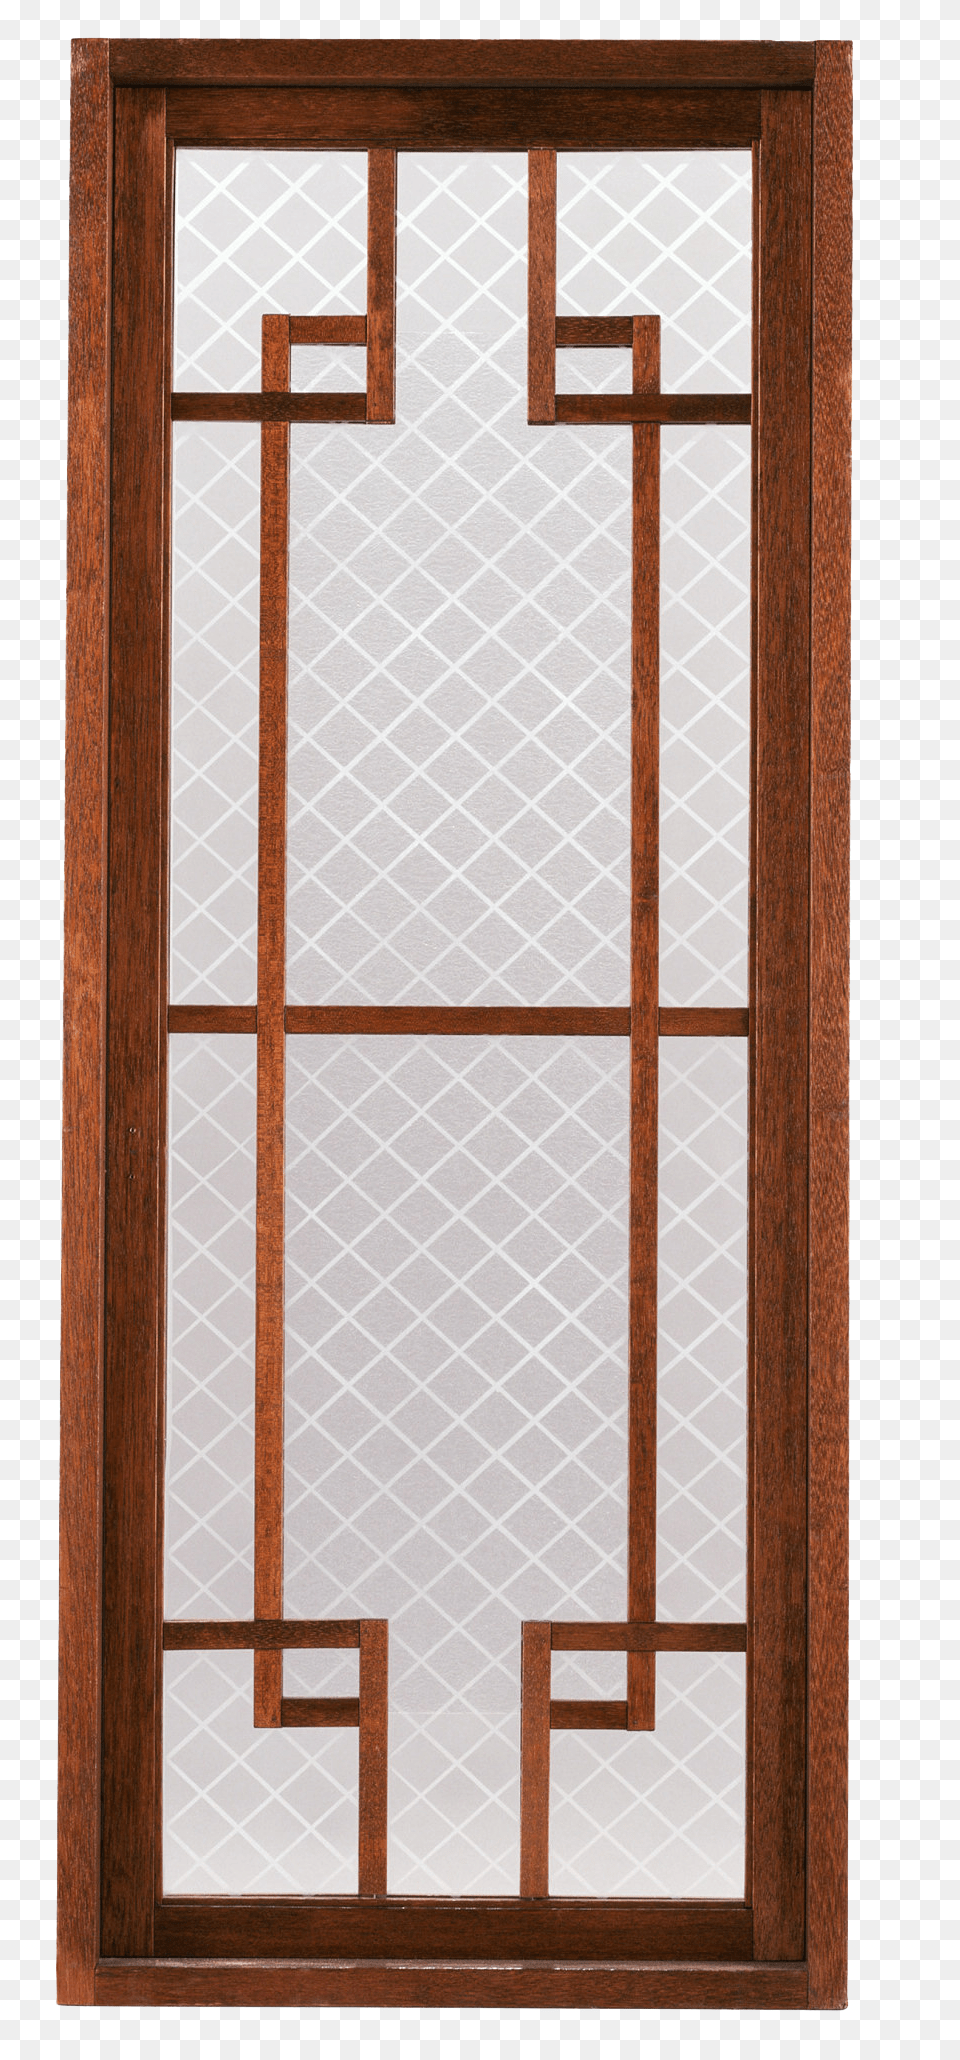 Door, Window, French Window Png Image